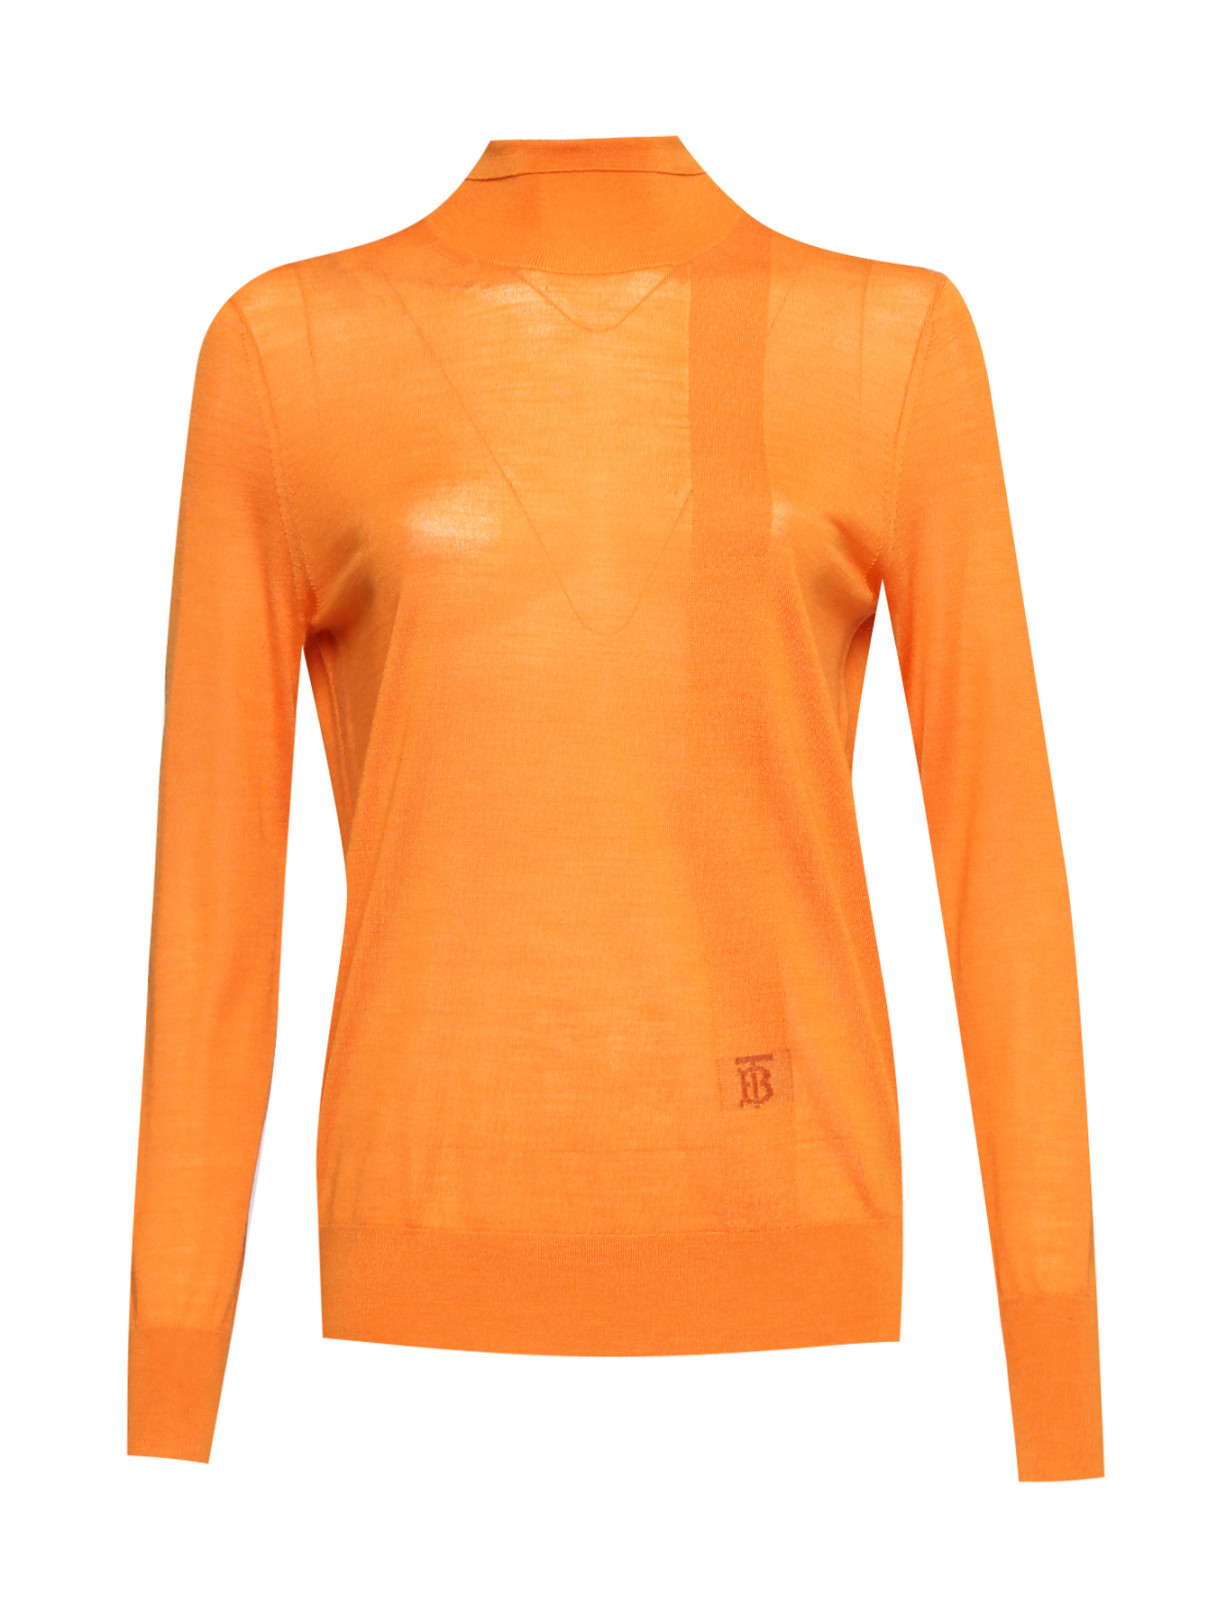 Водолазка из шерсти, шелка и кашемира однотонная Burberry  –  Общий вид  – Цвет:  Оранжевый